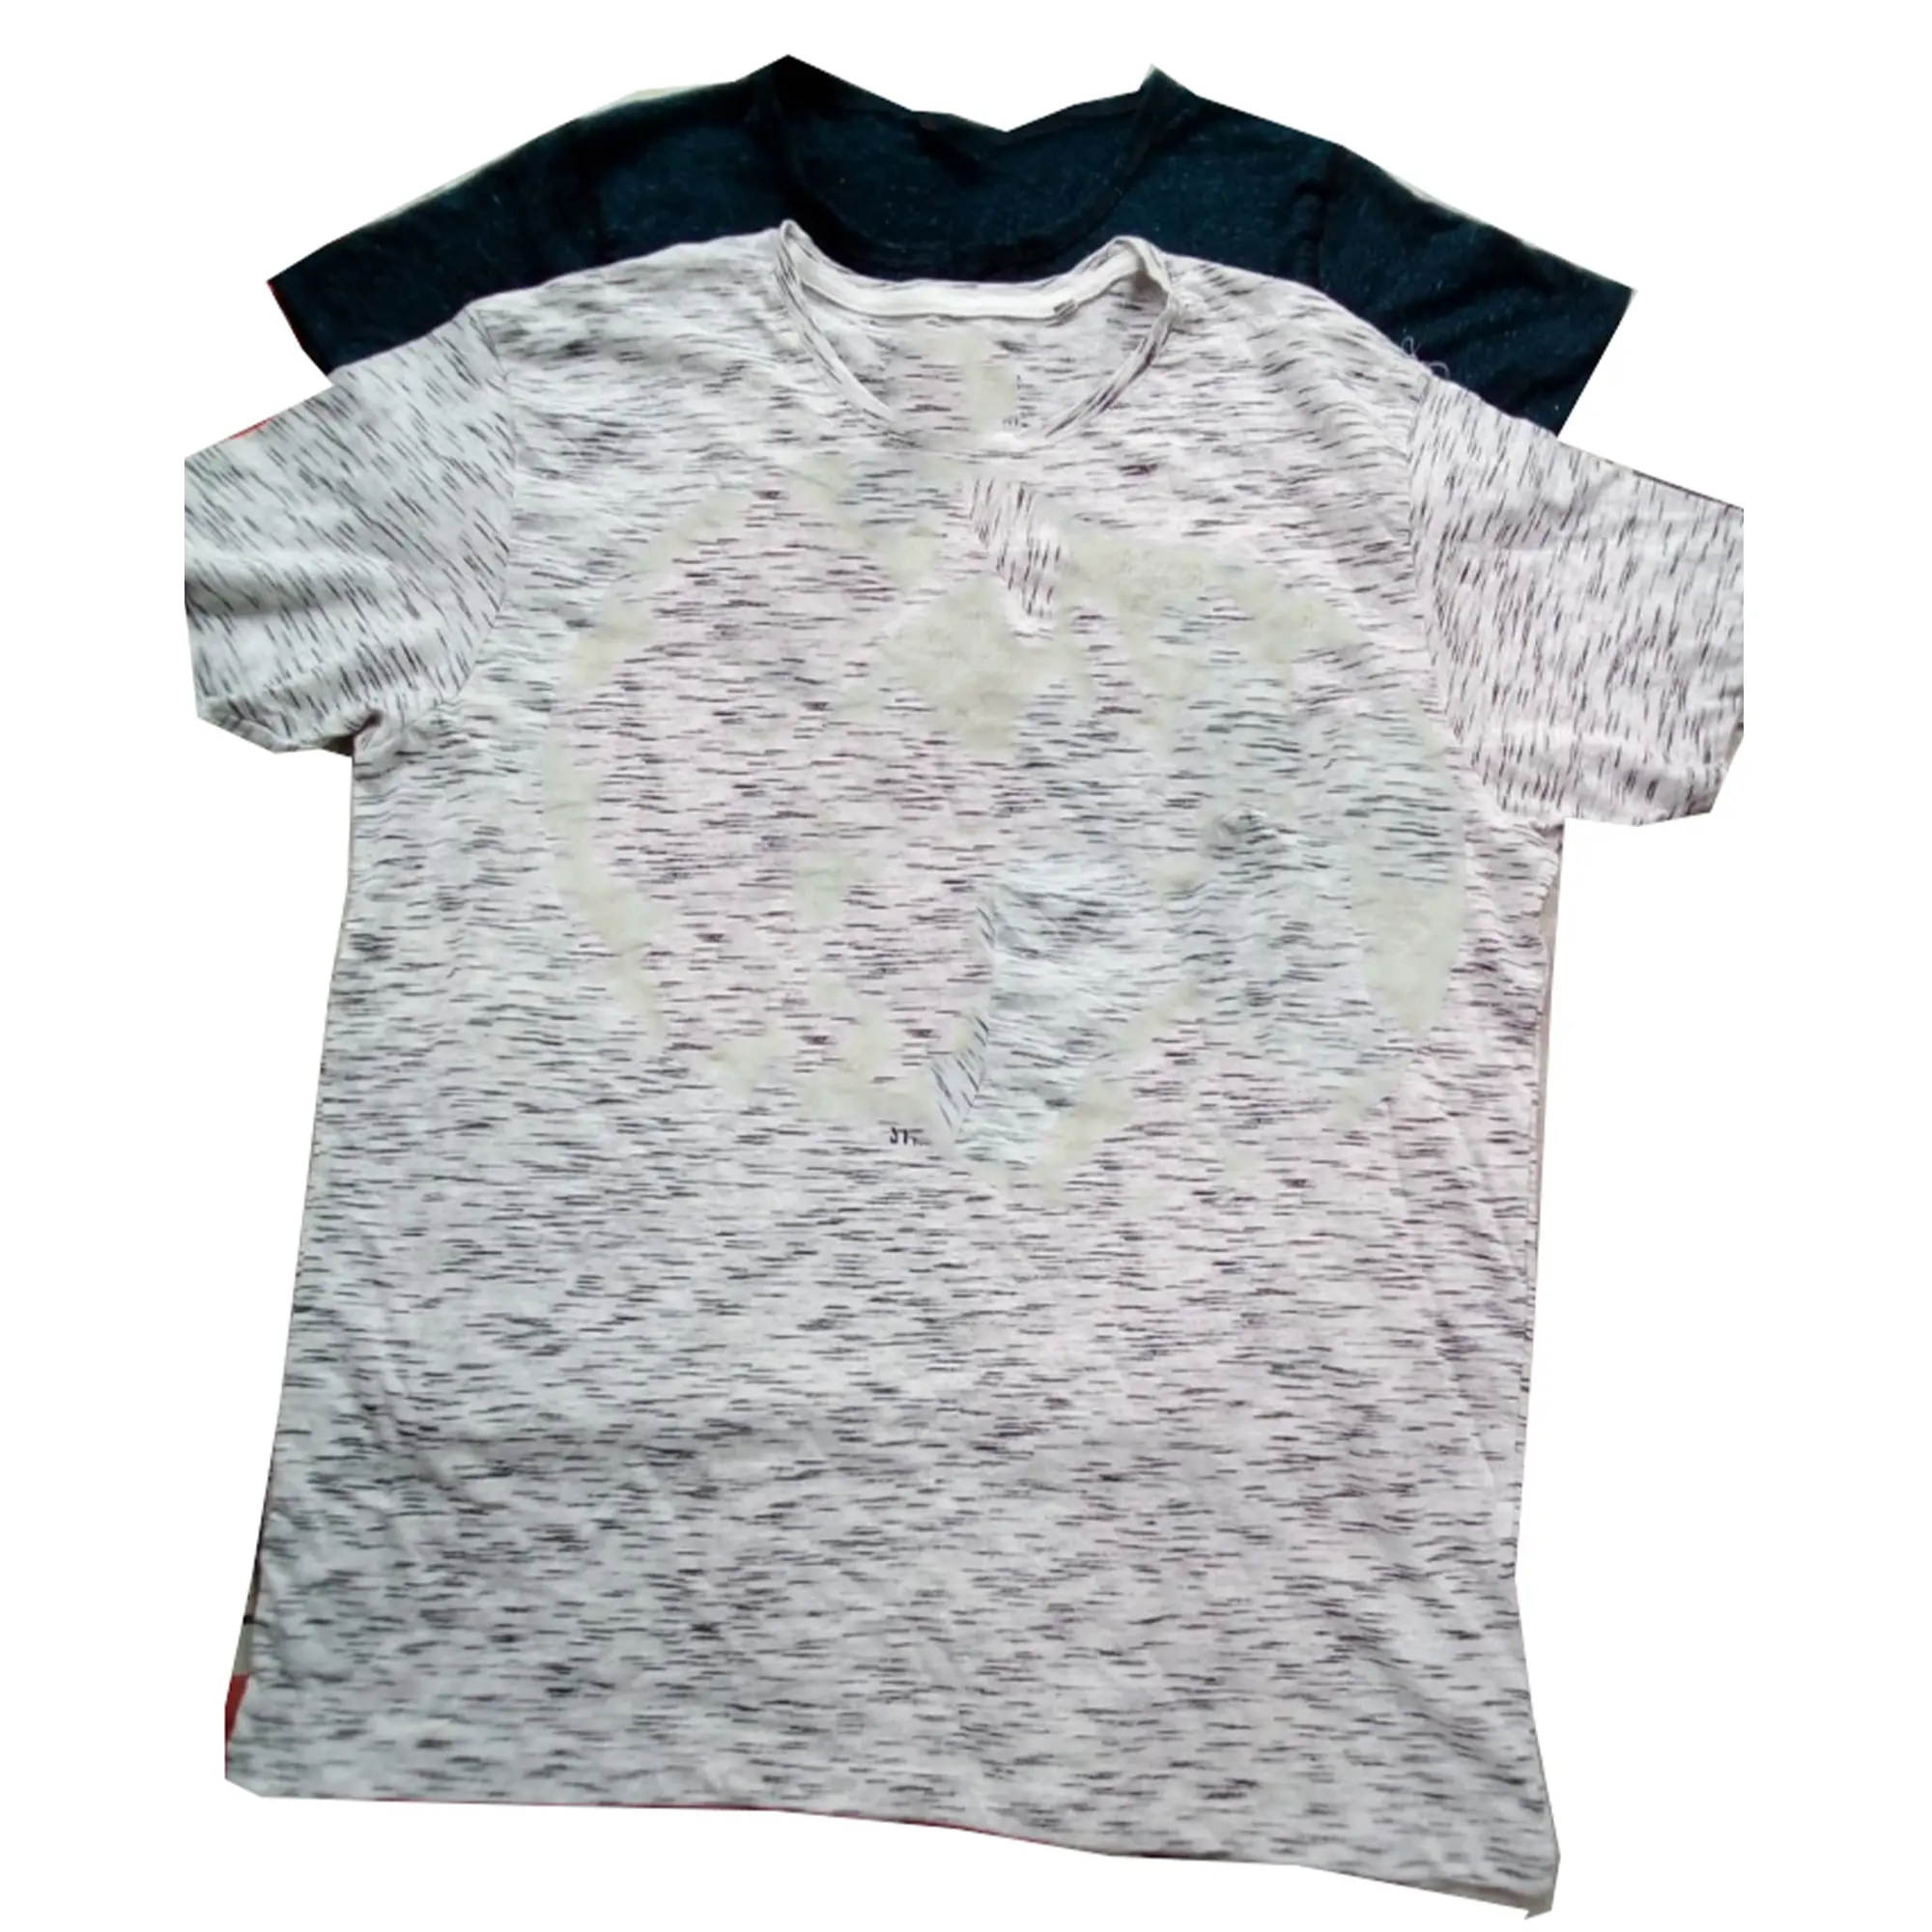 Vêtements Mixtes à Bas Prix Lot de Stock de T-shirt pour Hommes et Femmes pour Enfants Lot de Stock de T-shirt Fournisseurs Bangladesh de Tissu